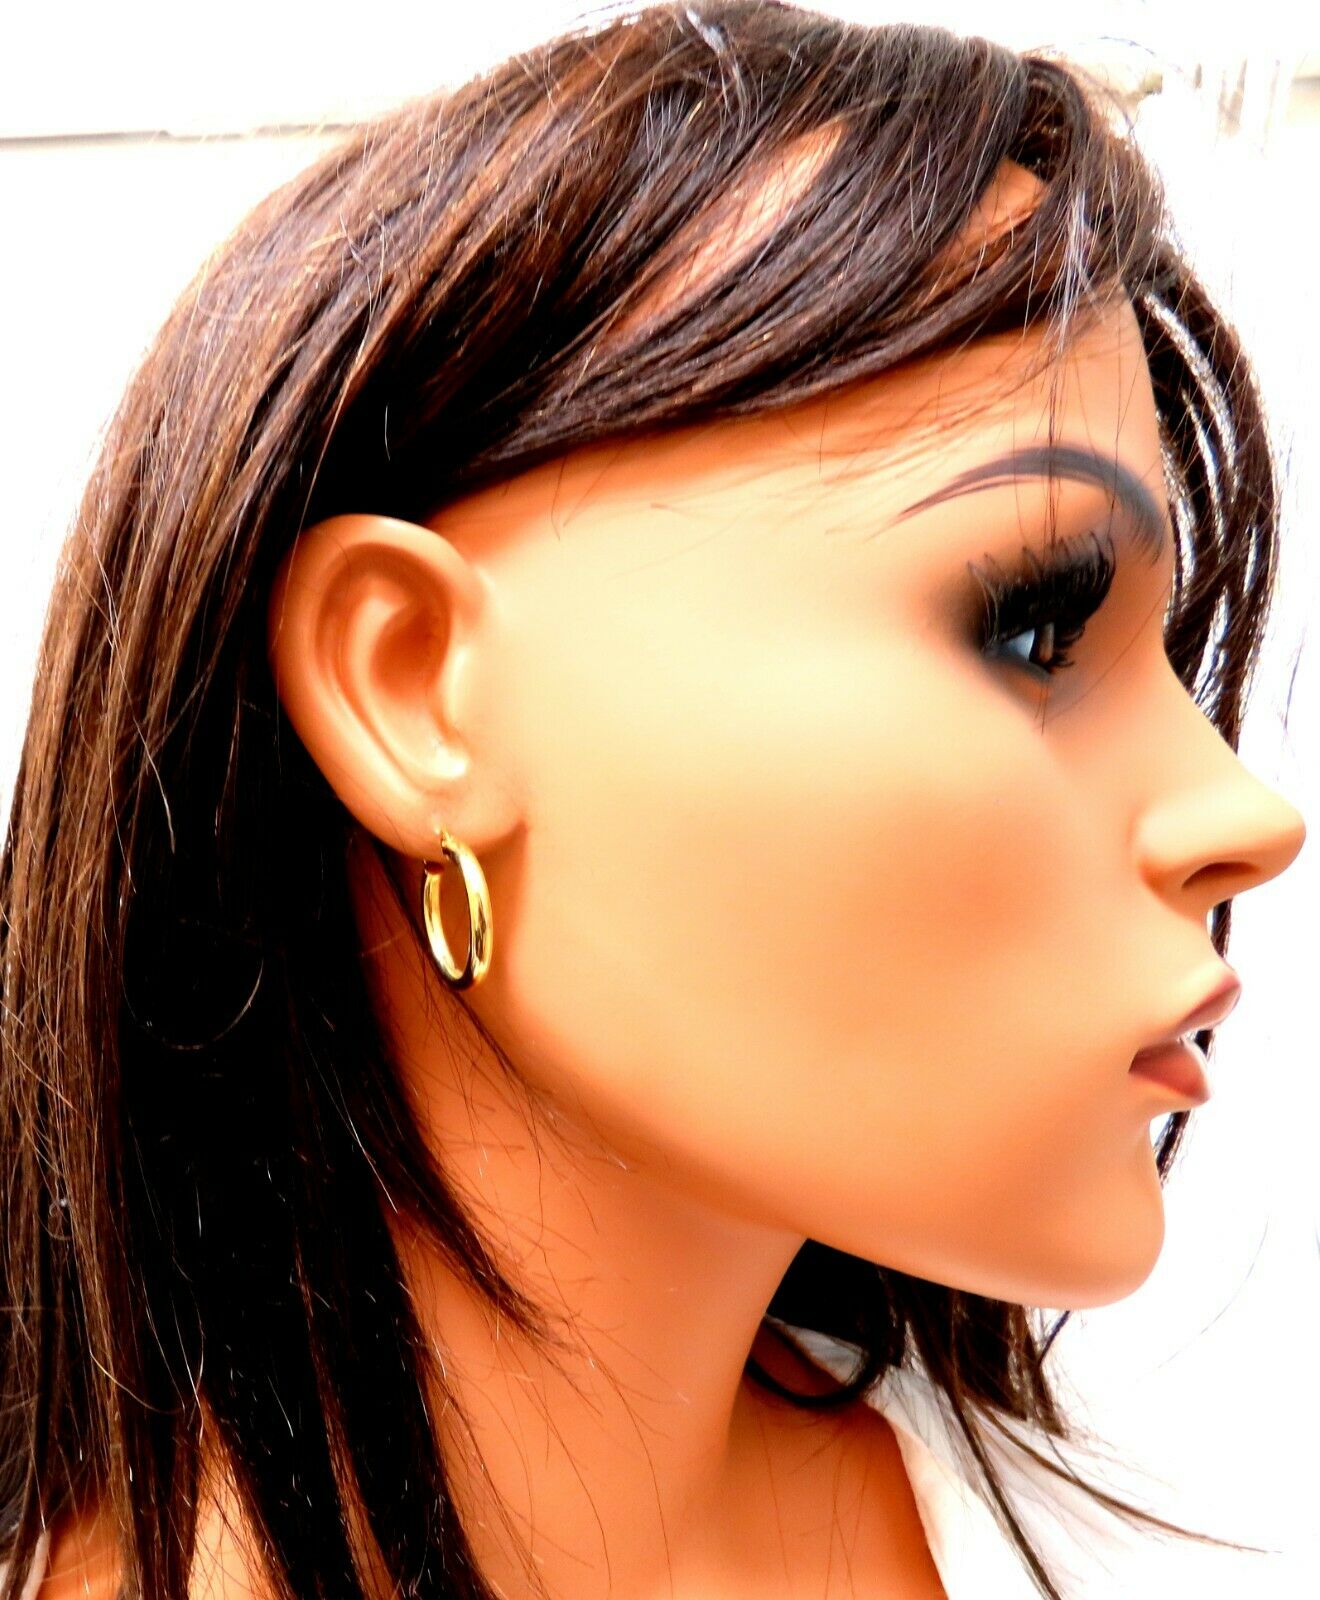 14Kt Gold Hoop Earrings Tubular Plain .88 inch long